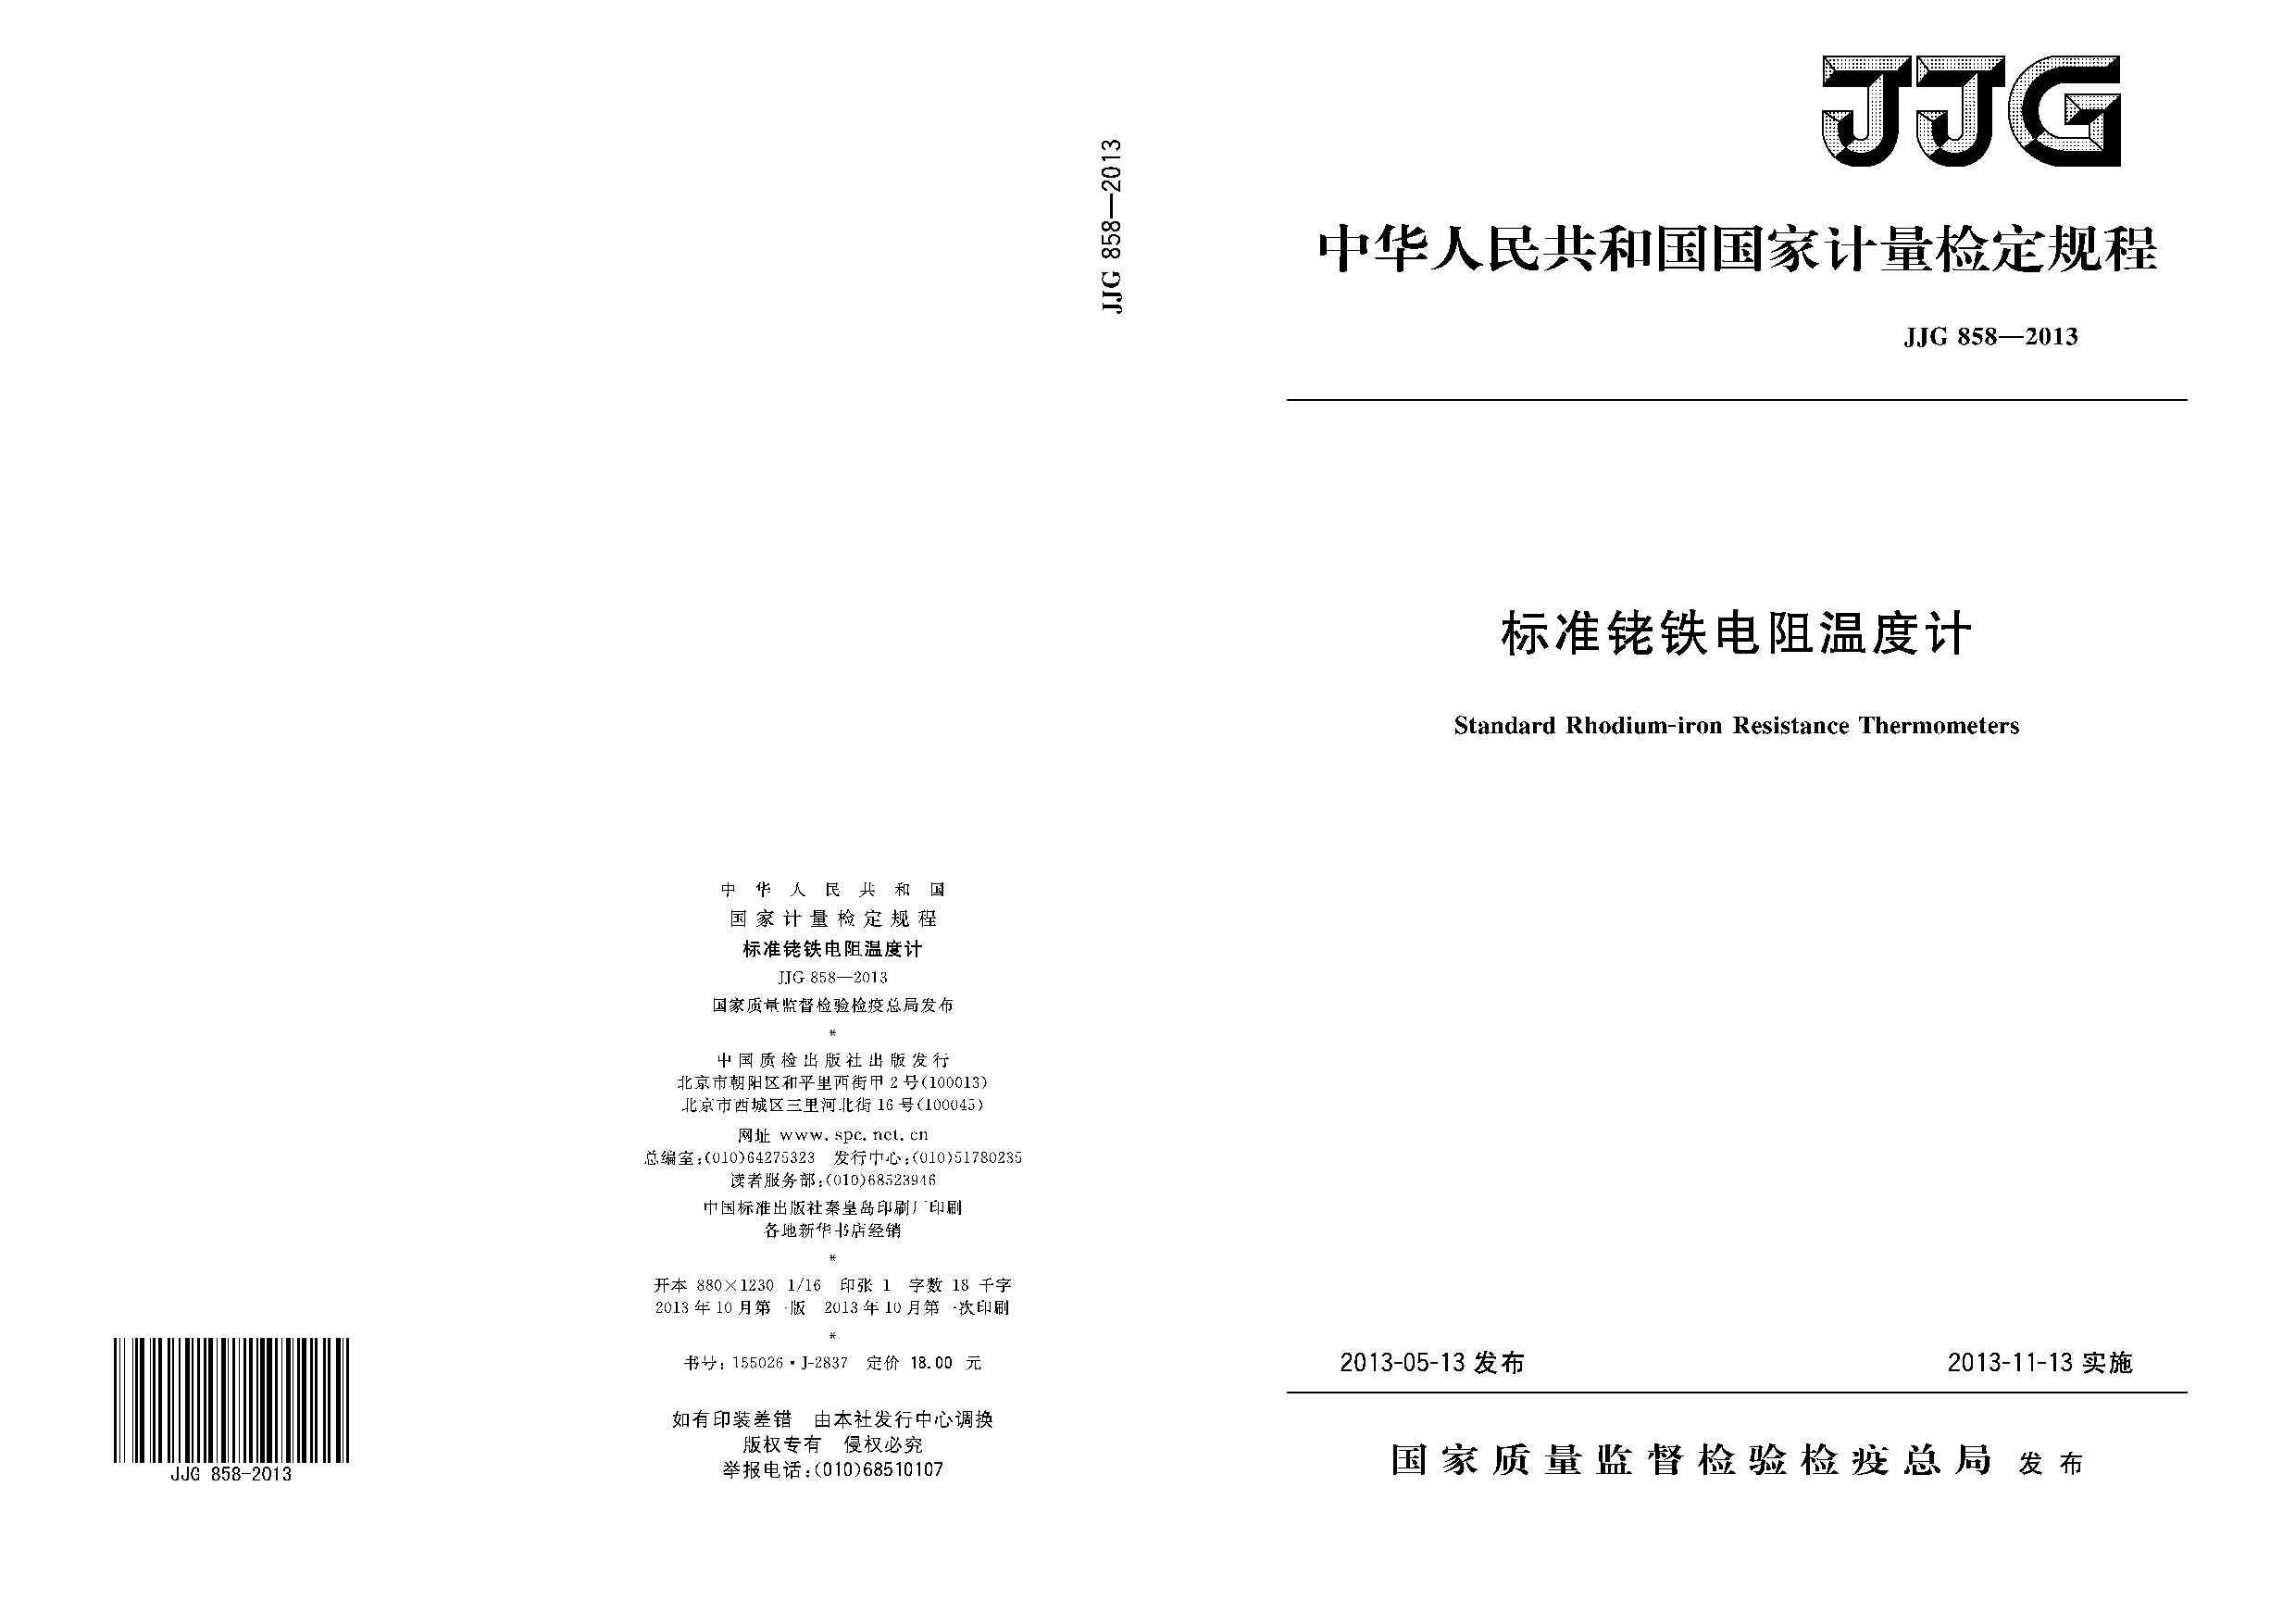 JJG 858-2013封面图